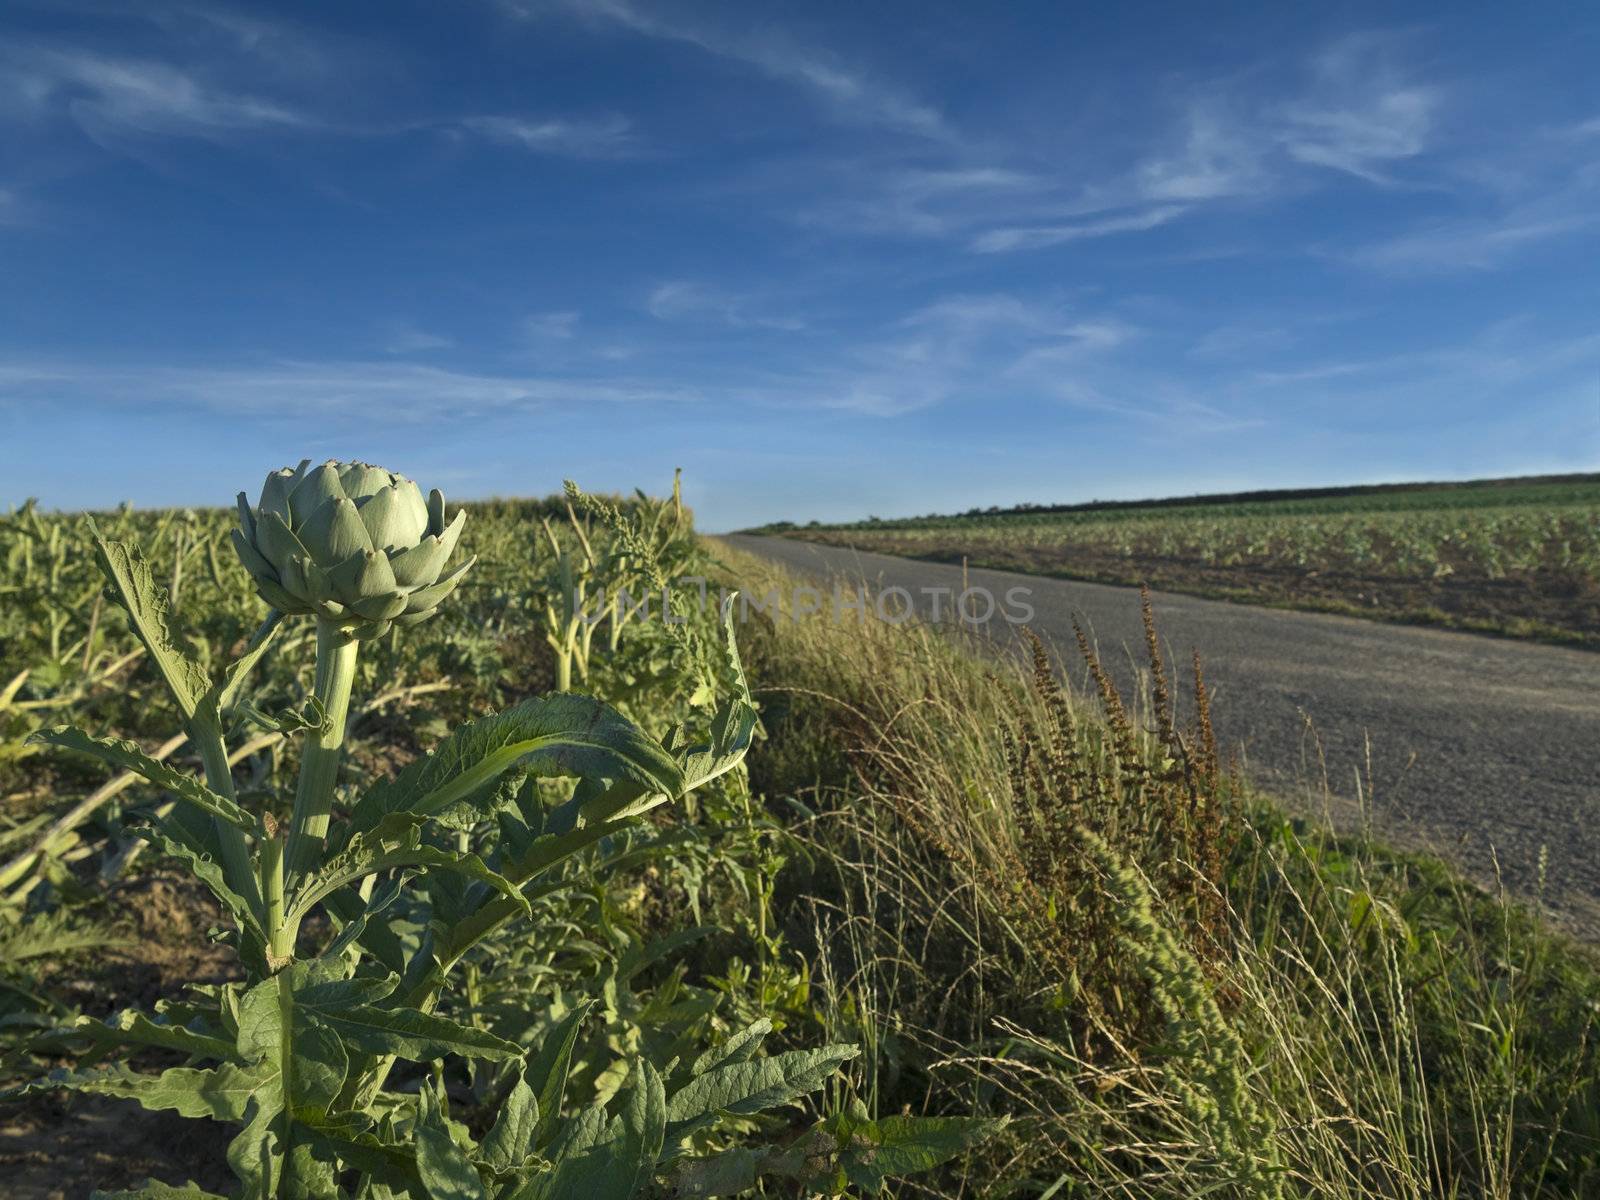 An artichoke field besides a road in Brittany, France.